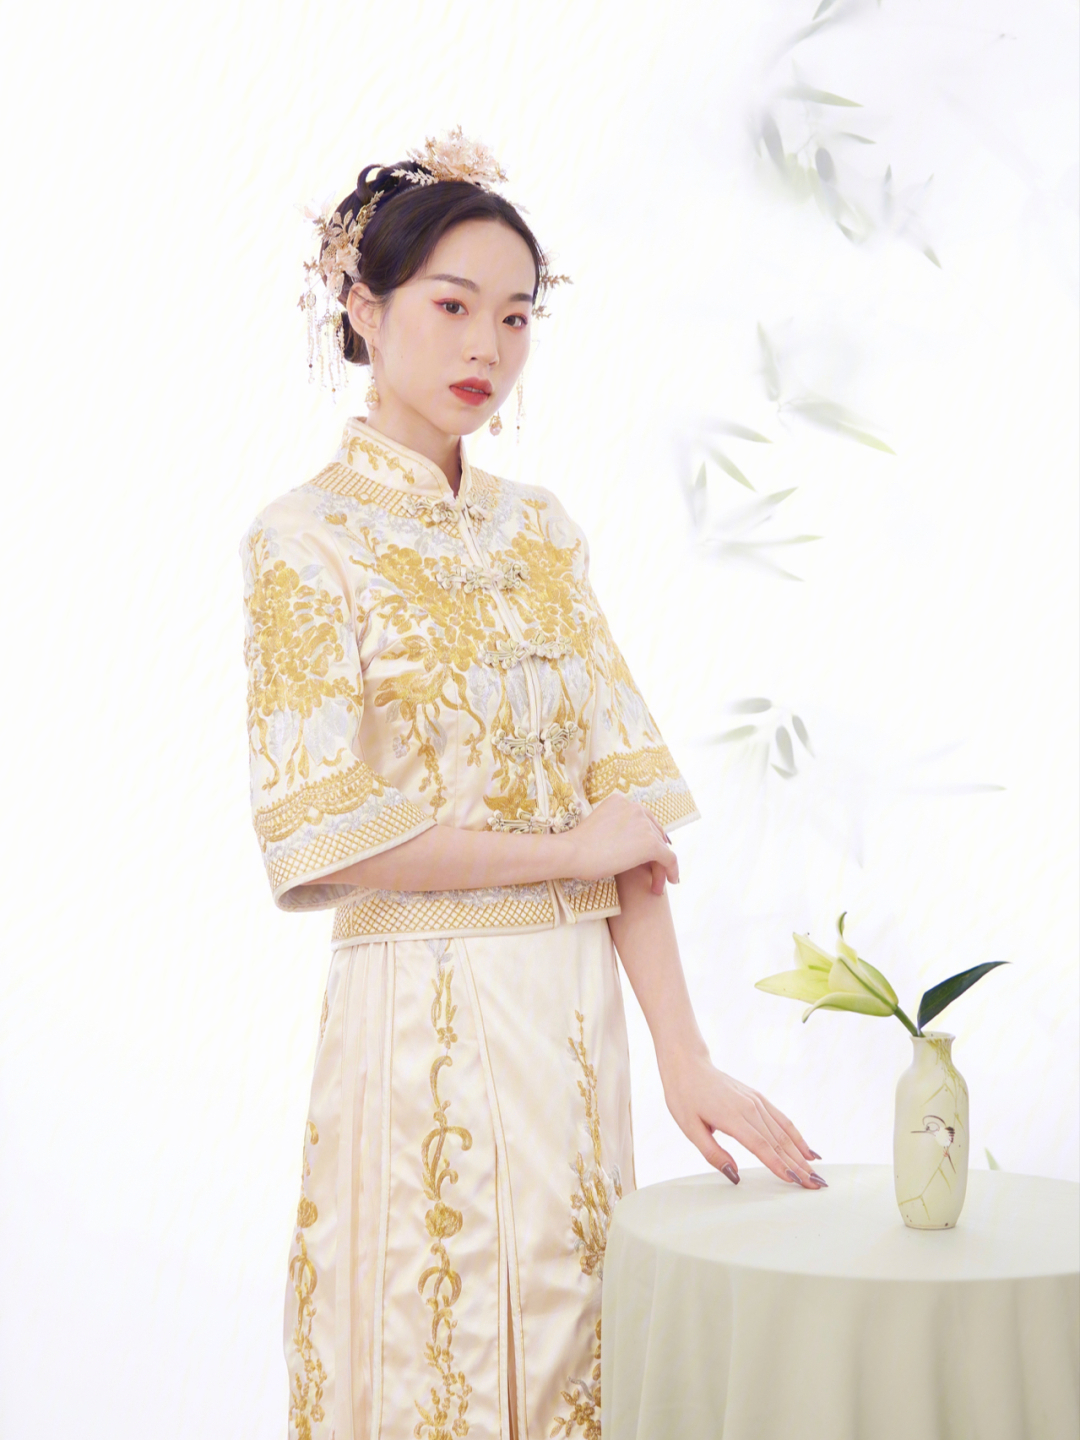 中式风格本身就是属于东方女神的神衣 它的定义就是温婉,端庄,优雅